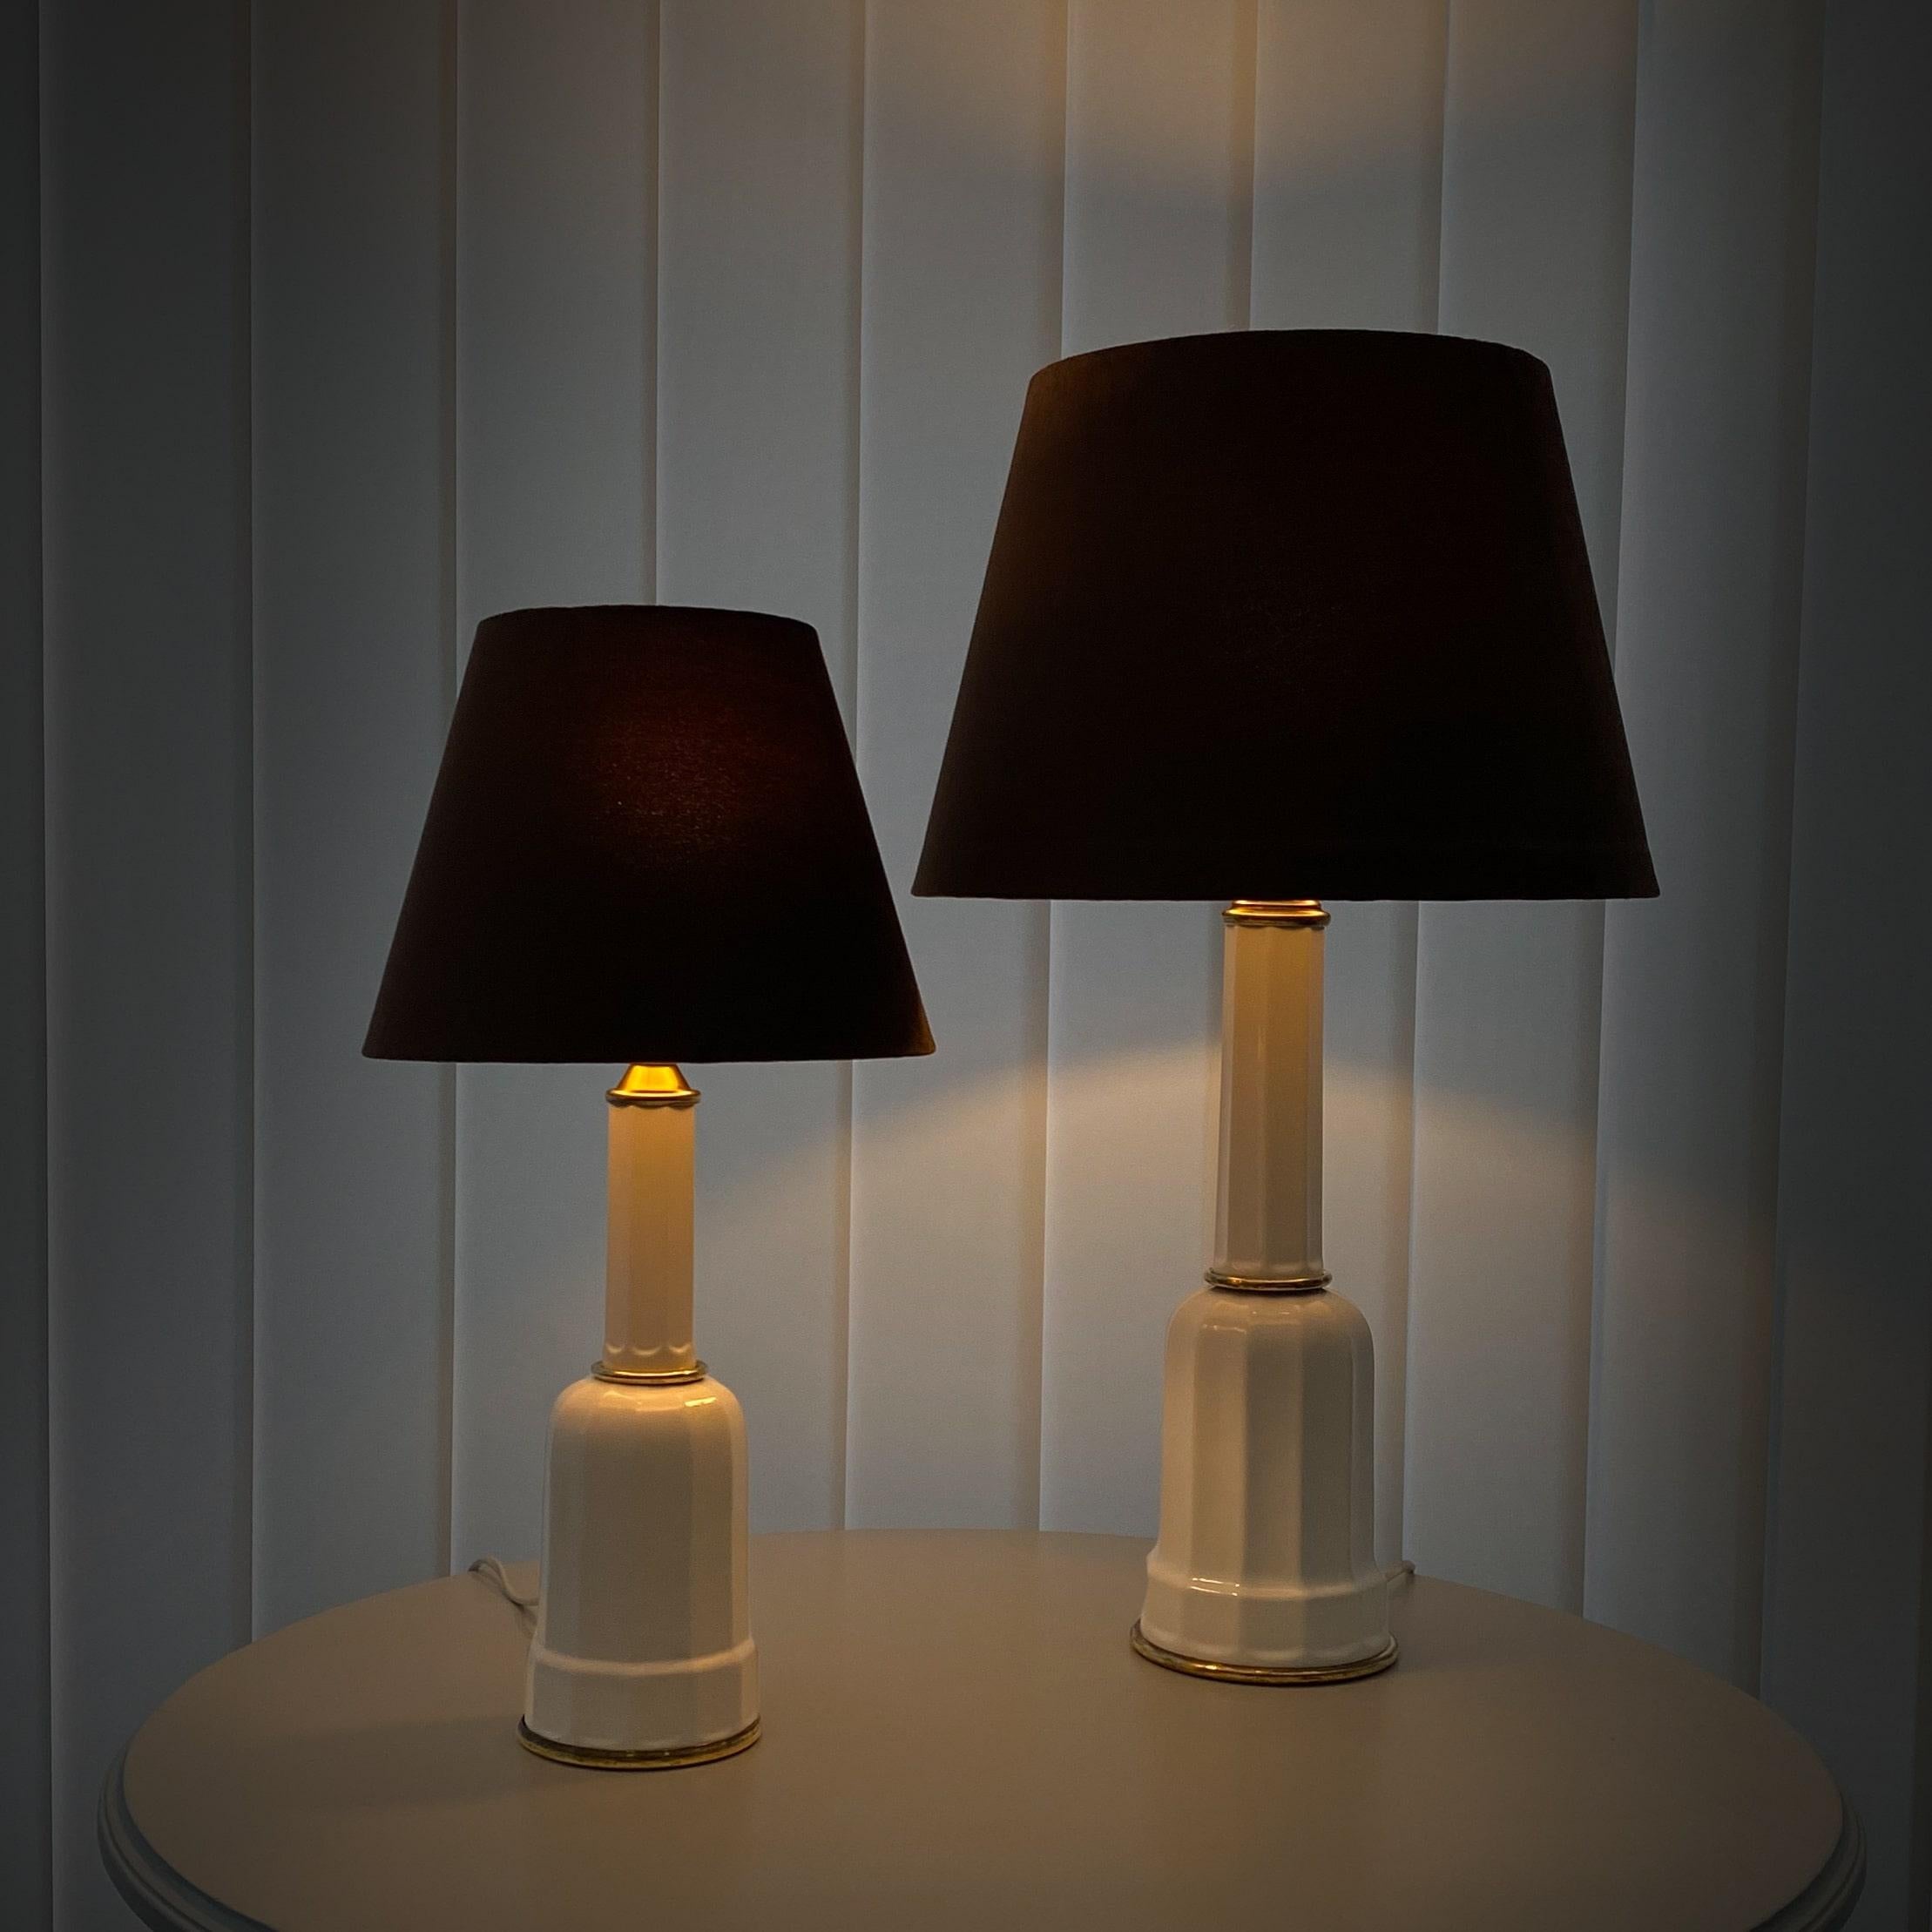 Ein Paar traditioneller dänischer Heiberg-Tischlampen, hergestellt aus Porzellan und Messing. Zwei identische Lampen, aber in zwei verschiedenen Größen. Komplett mit neuen, mit Samt überzogenen Lampenschirmen. Das Modell erhielt seinen Namen nach